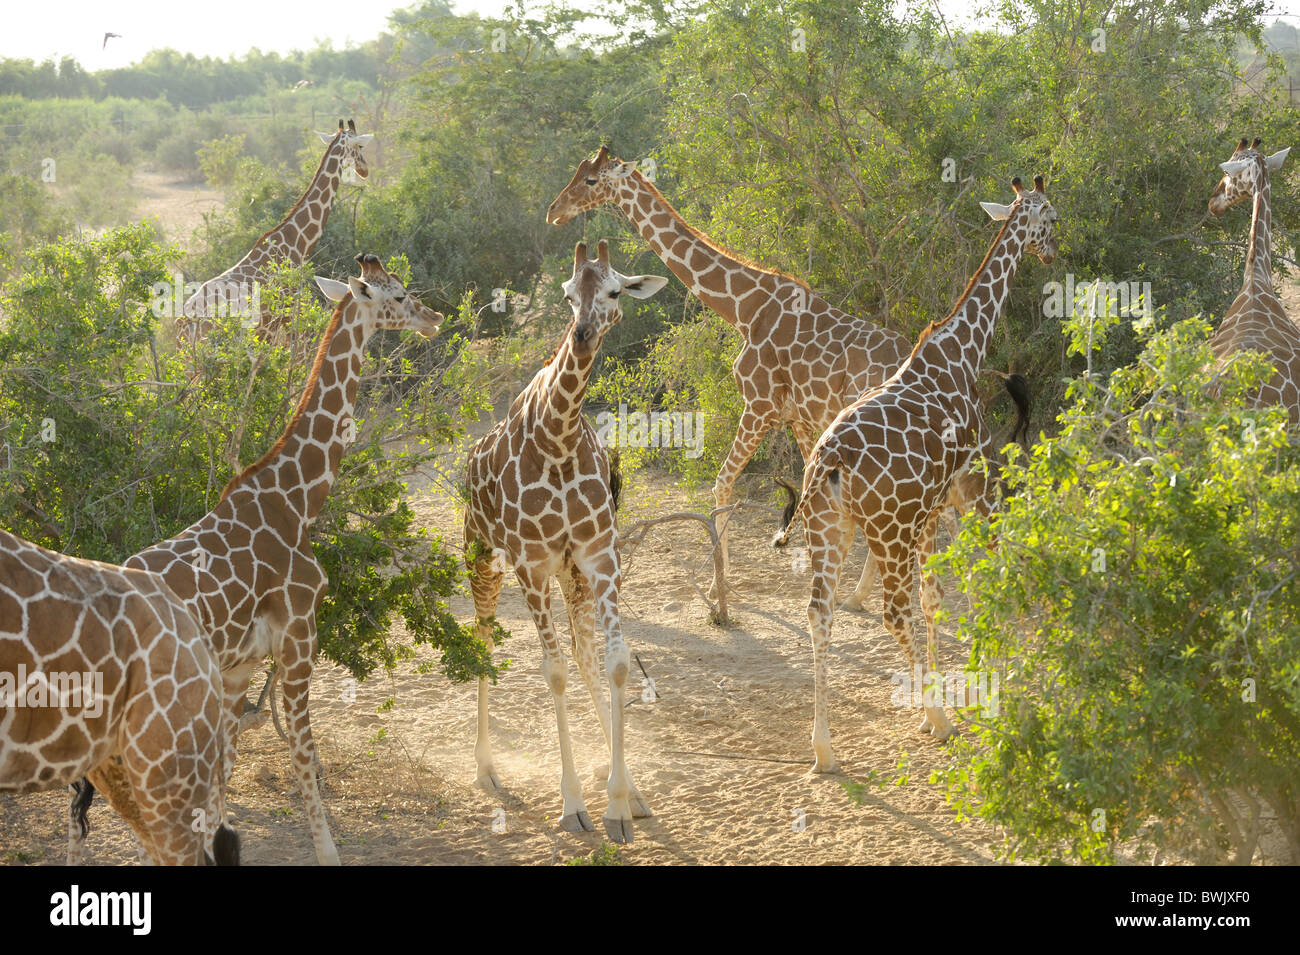 Varias jirafas (Giraffa camelopardalis) entre espinos Acacia Sir Bani Yas Island, EAU Foto de stock